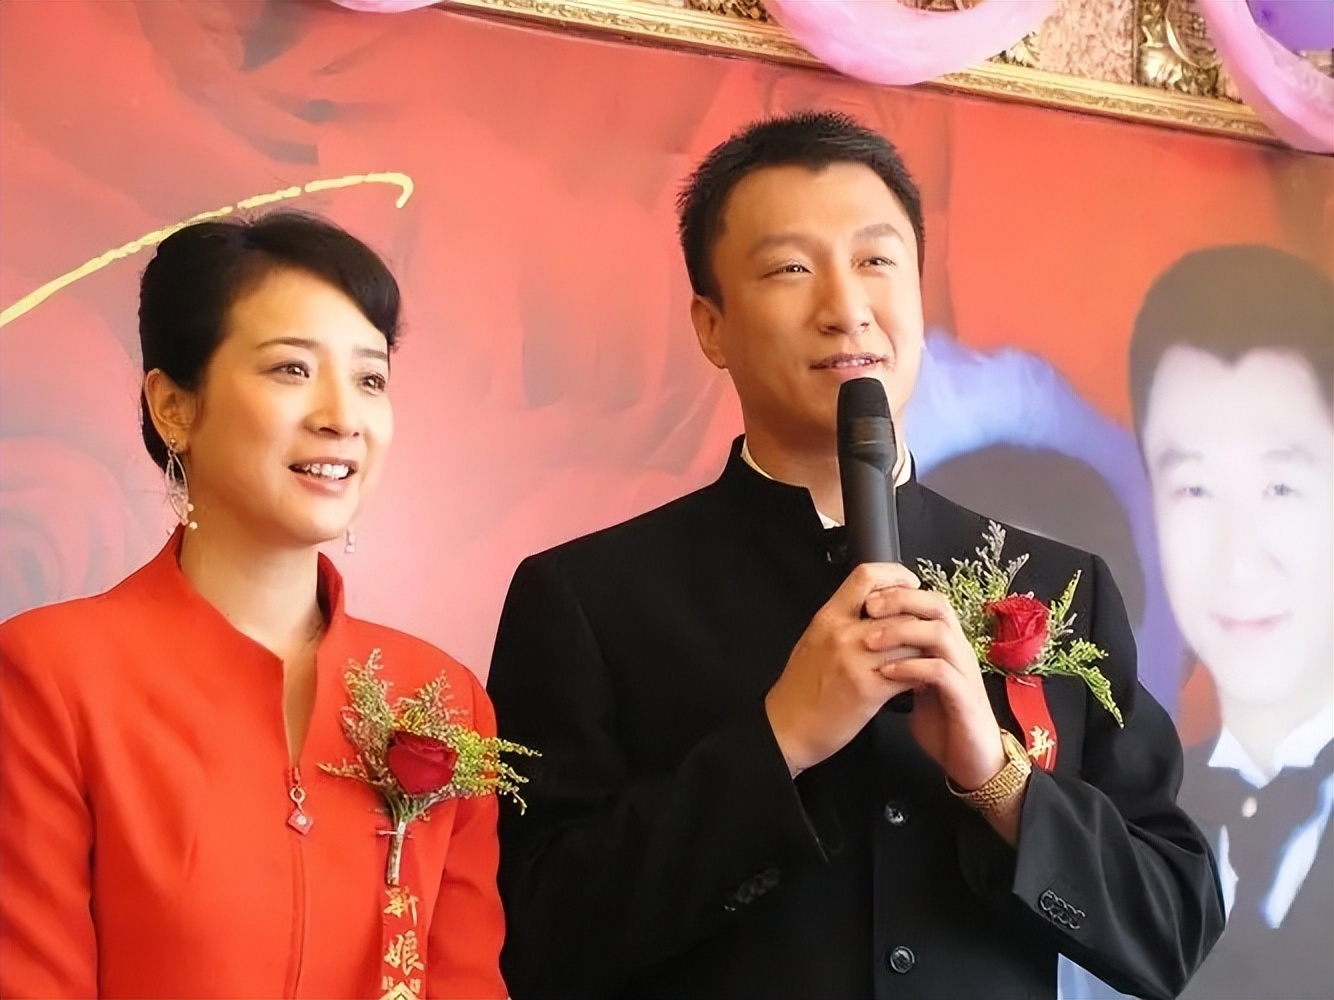 演员陈小艺结婚二十多年,多次出轨小鲜肉,丈夫却坐轮椅也不离婚